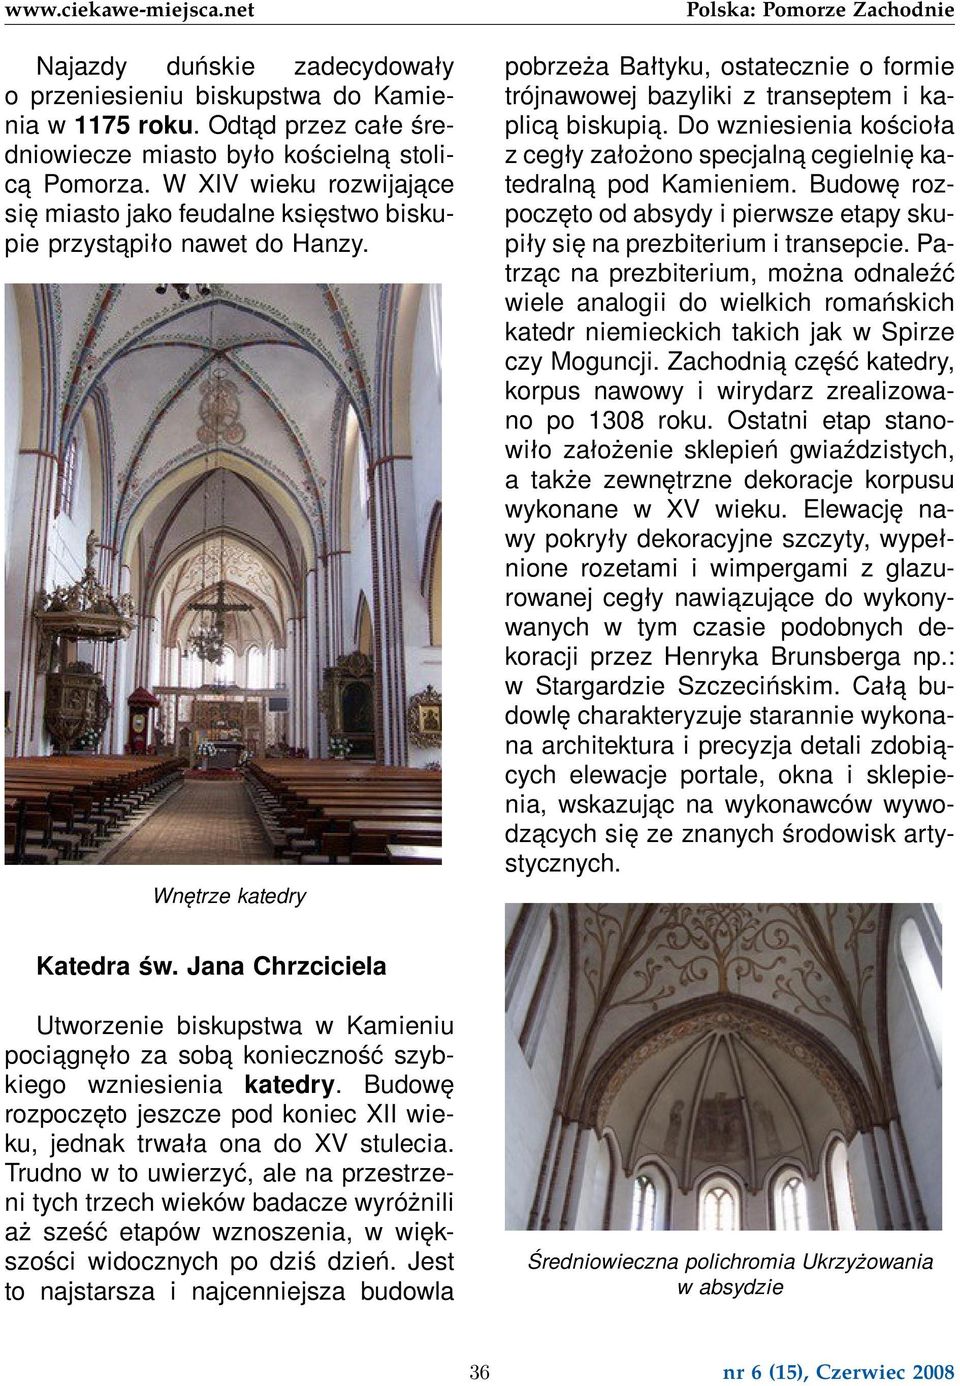 Wnętrze katedry pobrzeża Bałtyku, ostatecznie o formie trójnawowej bazyliki z transeptem i kaplicą biskupią. Do wzniesienia kościoła z cegły założono specjalną cegielnię katedralną pod Kamieniem.